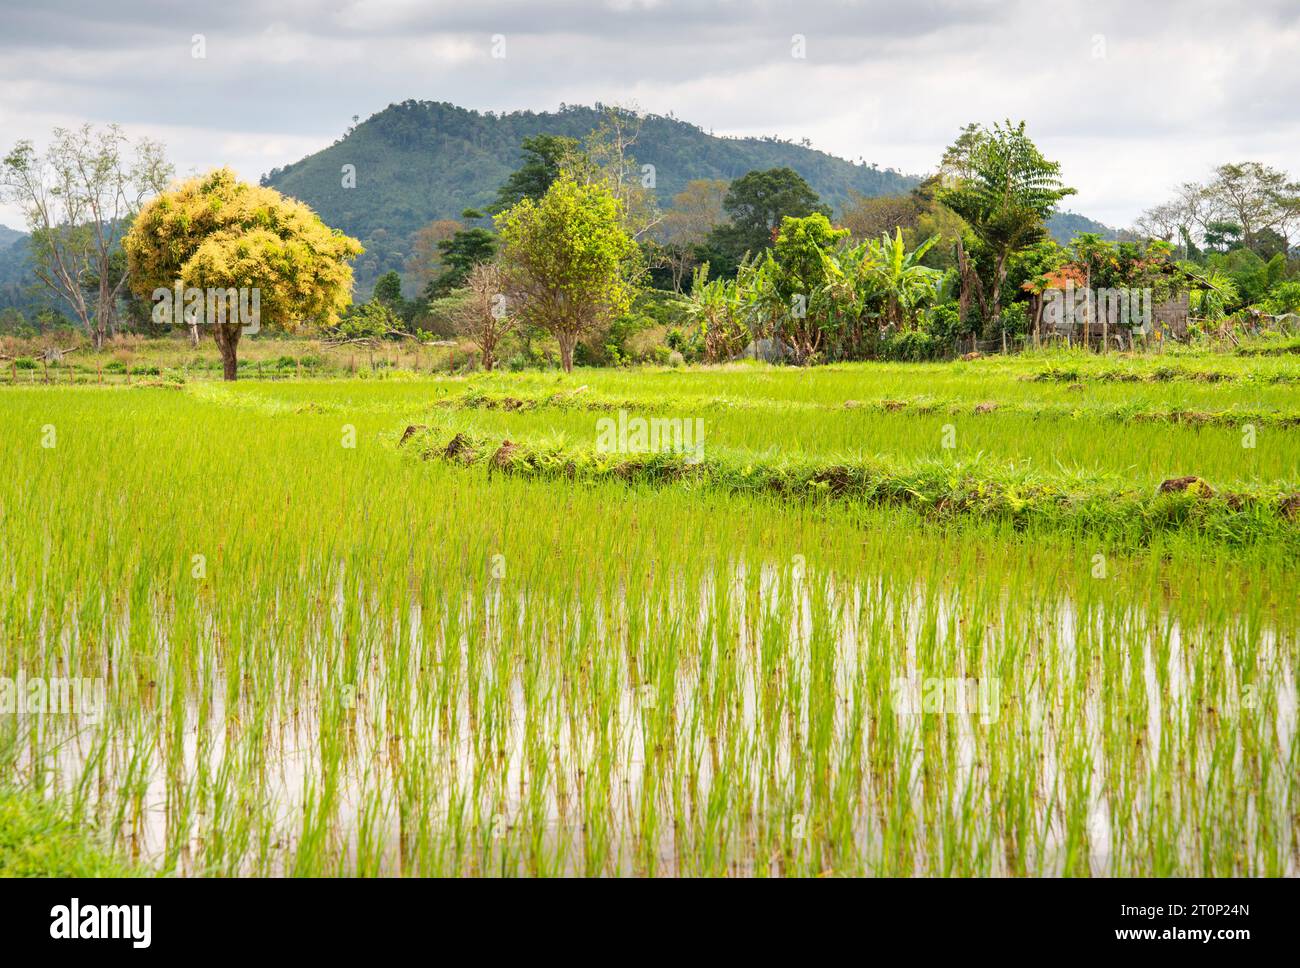 Remota fattoria laotiana, campi di riso sull'altopiano di Bolaven, montagne in lontananza, splendide e vivaci sfumature verdi dalle migliaia di riso Foto Stock